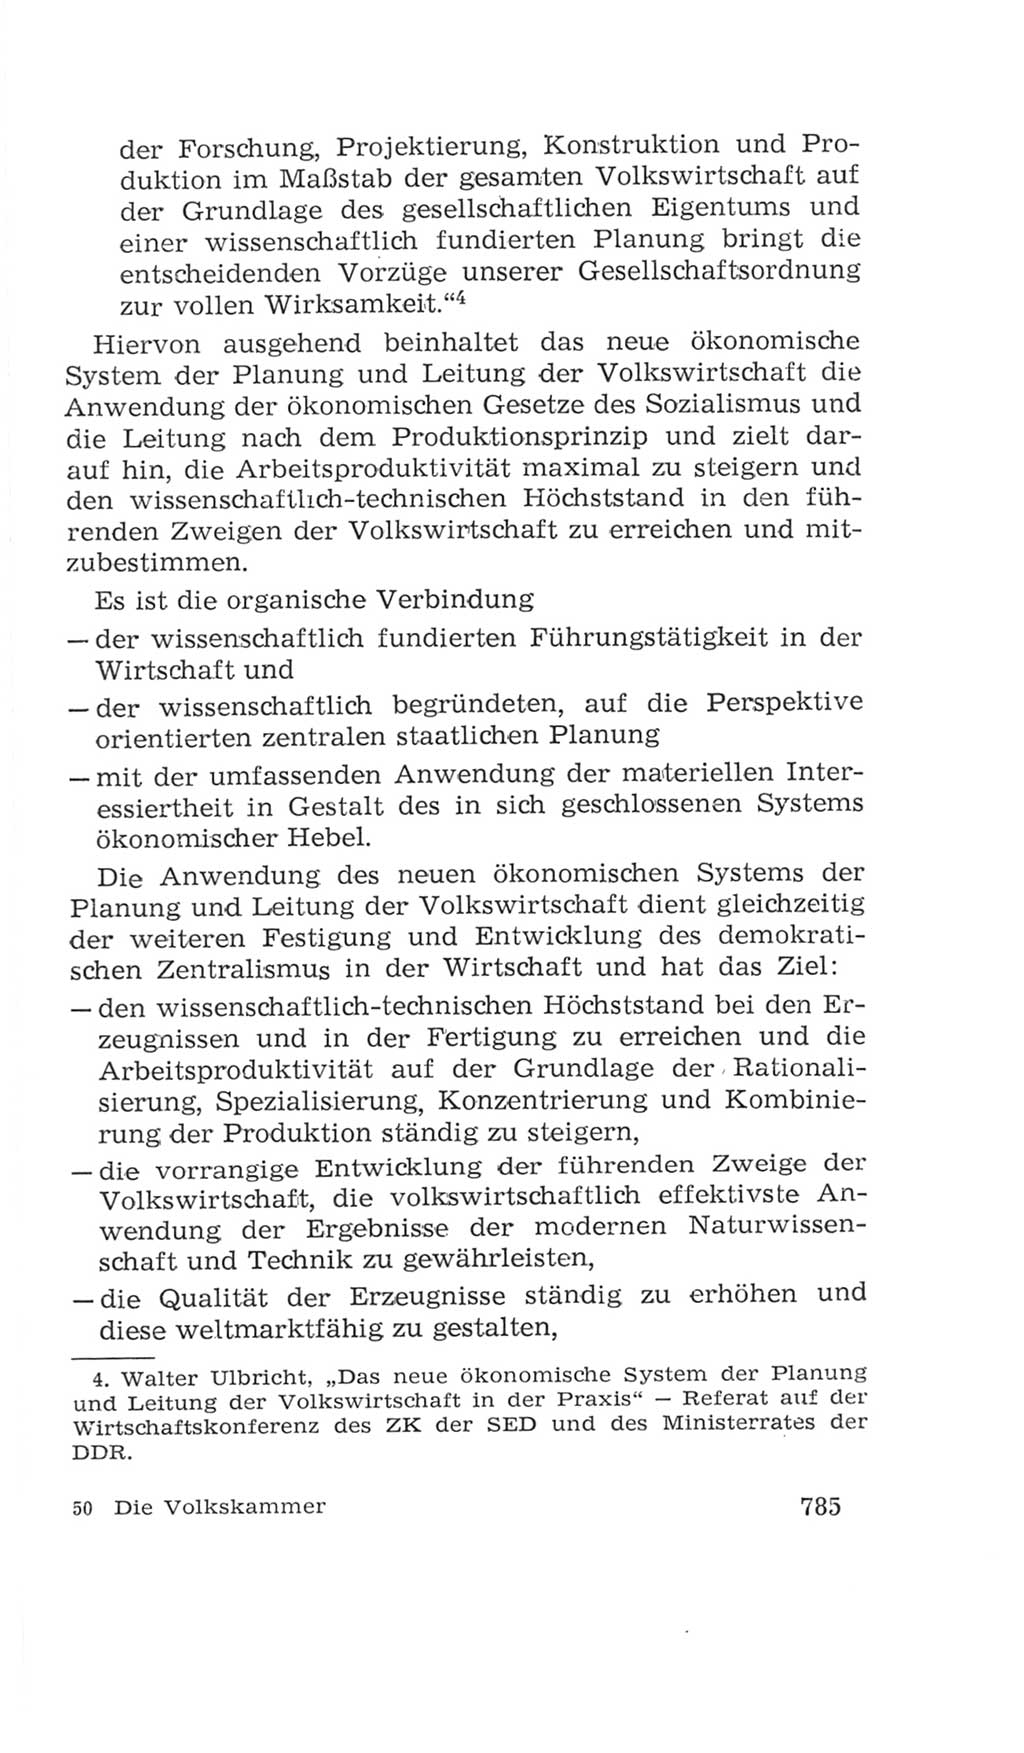 Volkskammer (VK) der Deutschen Demokratischen Republik (DDR), 4. Wahlperiode 1963-1967, Seite 785 (VK. DDR 4. WP. 1963-1967, S. 785)